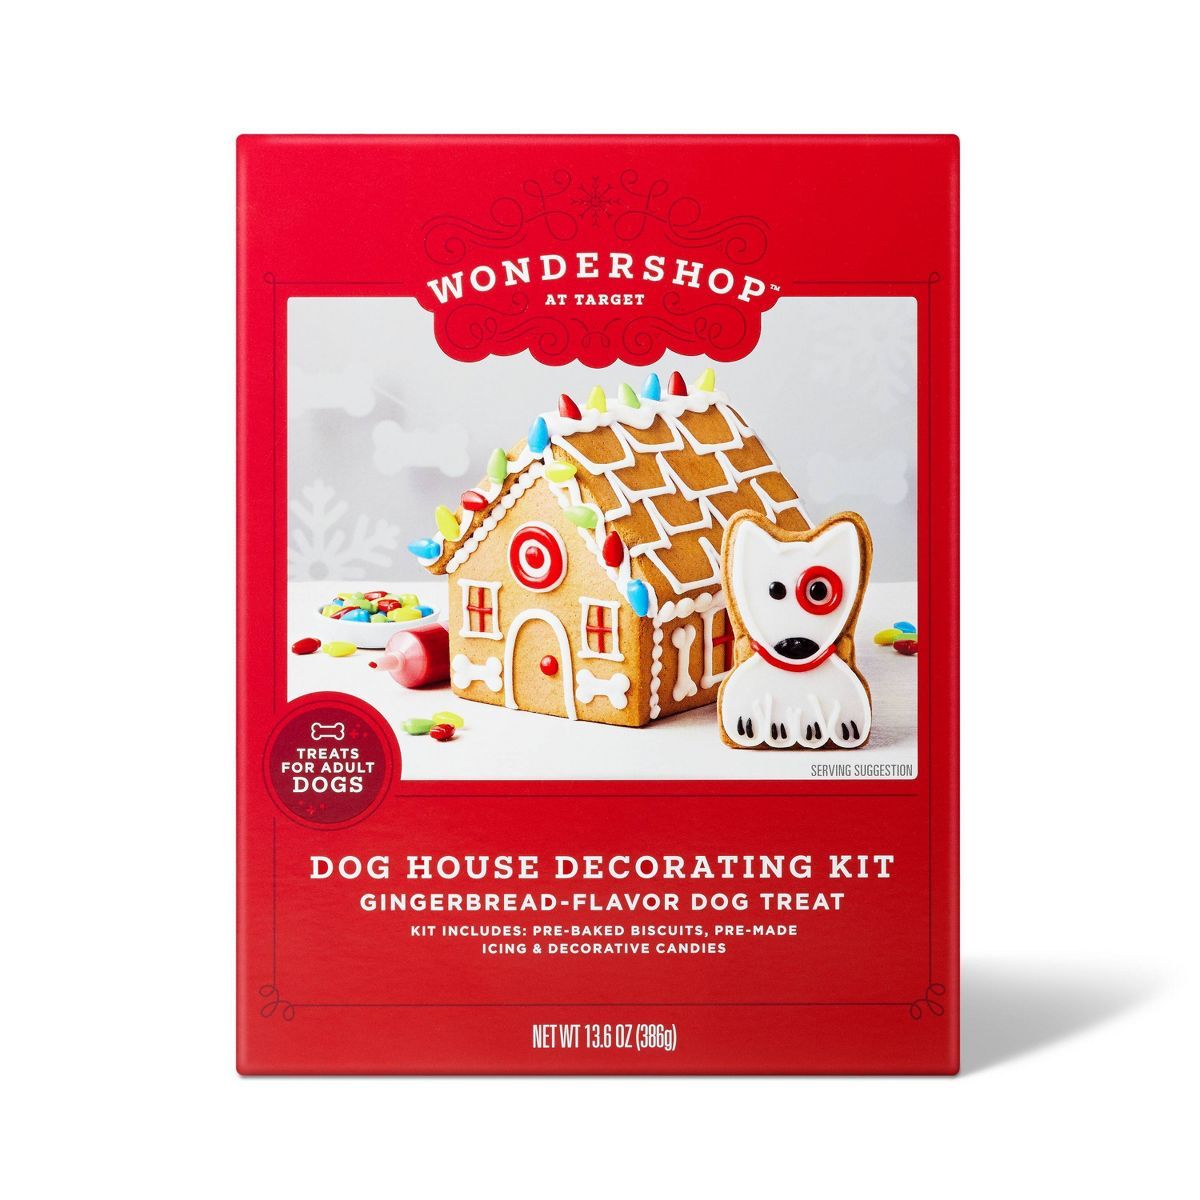 Dog House Decorating Kit Gingerbread Flavor Dog Treat For Adult Dog - 13.6oz - Wondershop™ | Target